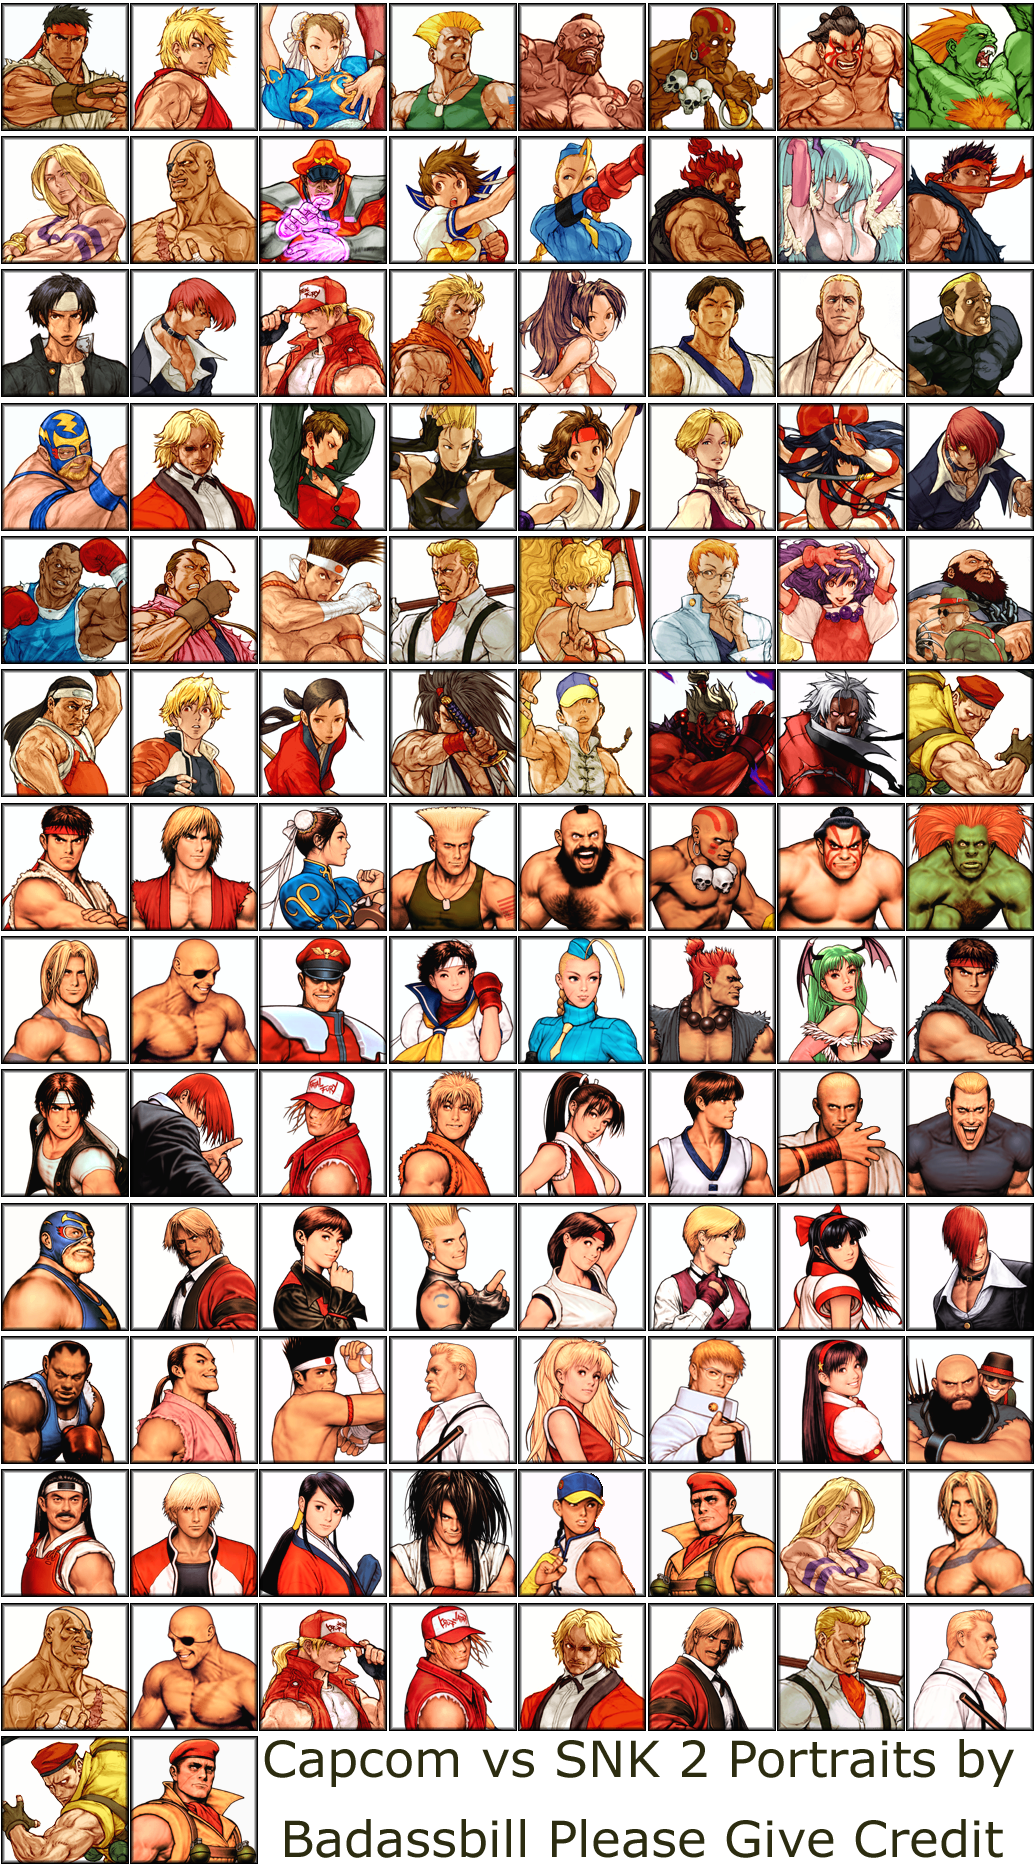 Capcom vs. SNK 2: Mark of the Millenium 2001 - Portraits